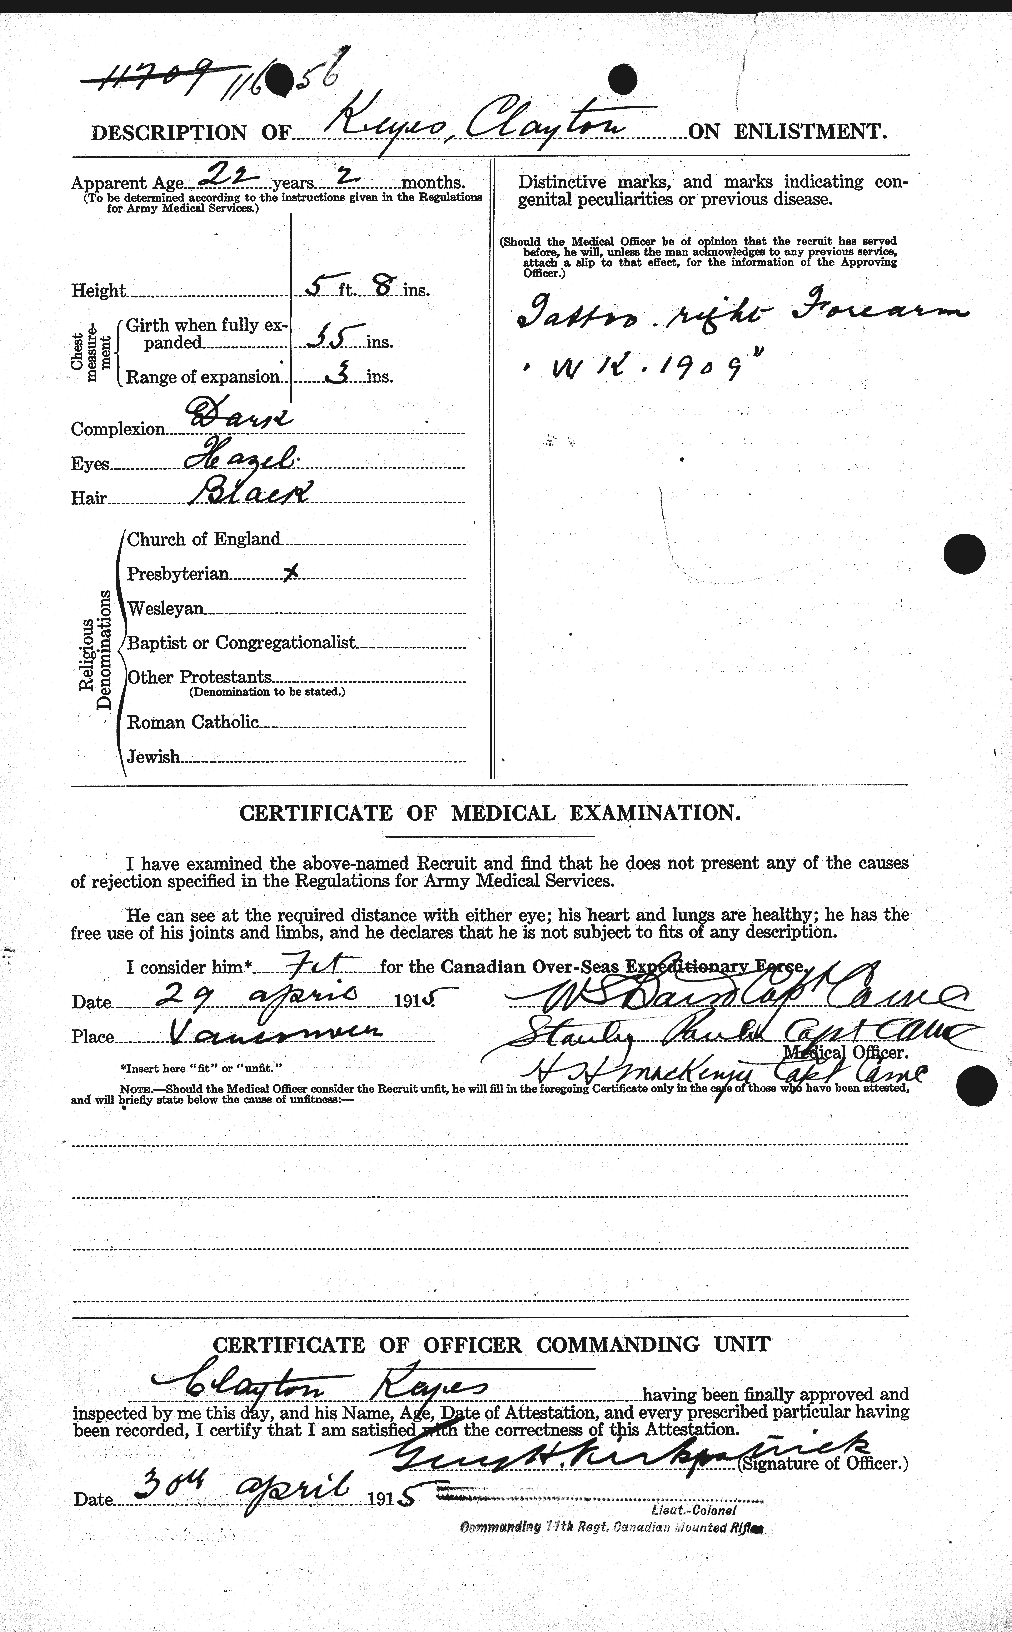 Dossiers du Personnel de la Première Guerre mondiale - CEC 436511b